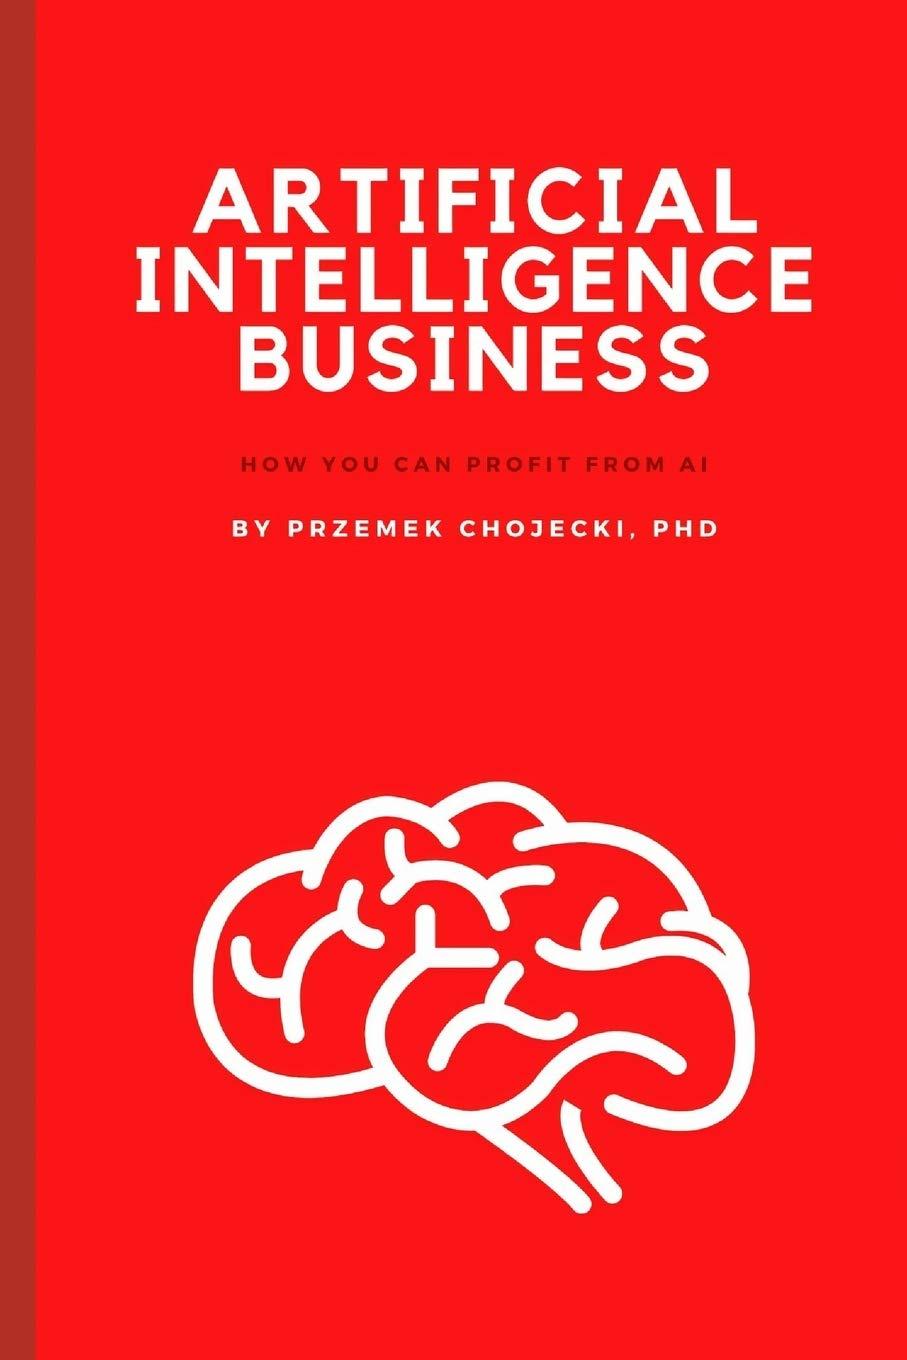 artificial intelligence business how you can profit from ai 1st edition przemek chojecki b089twrzys,